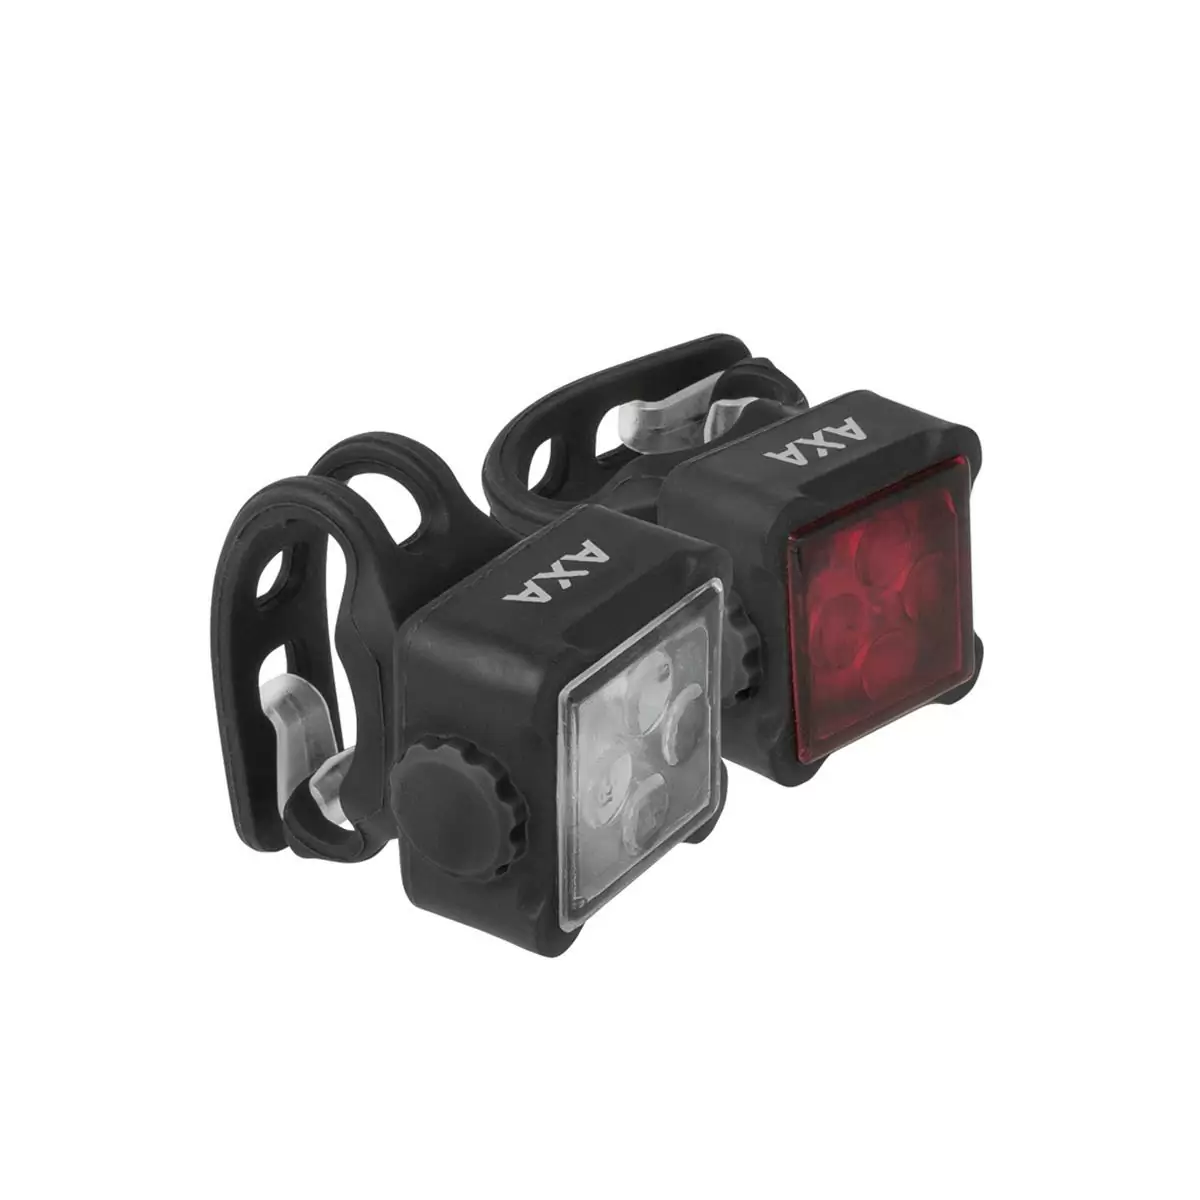 Kit Niteline 44-R luz dianteira e traseira USB - image